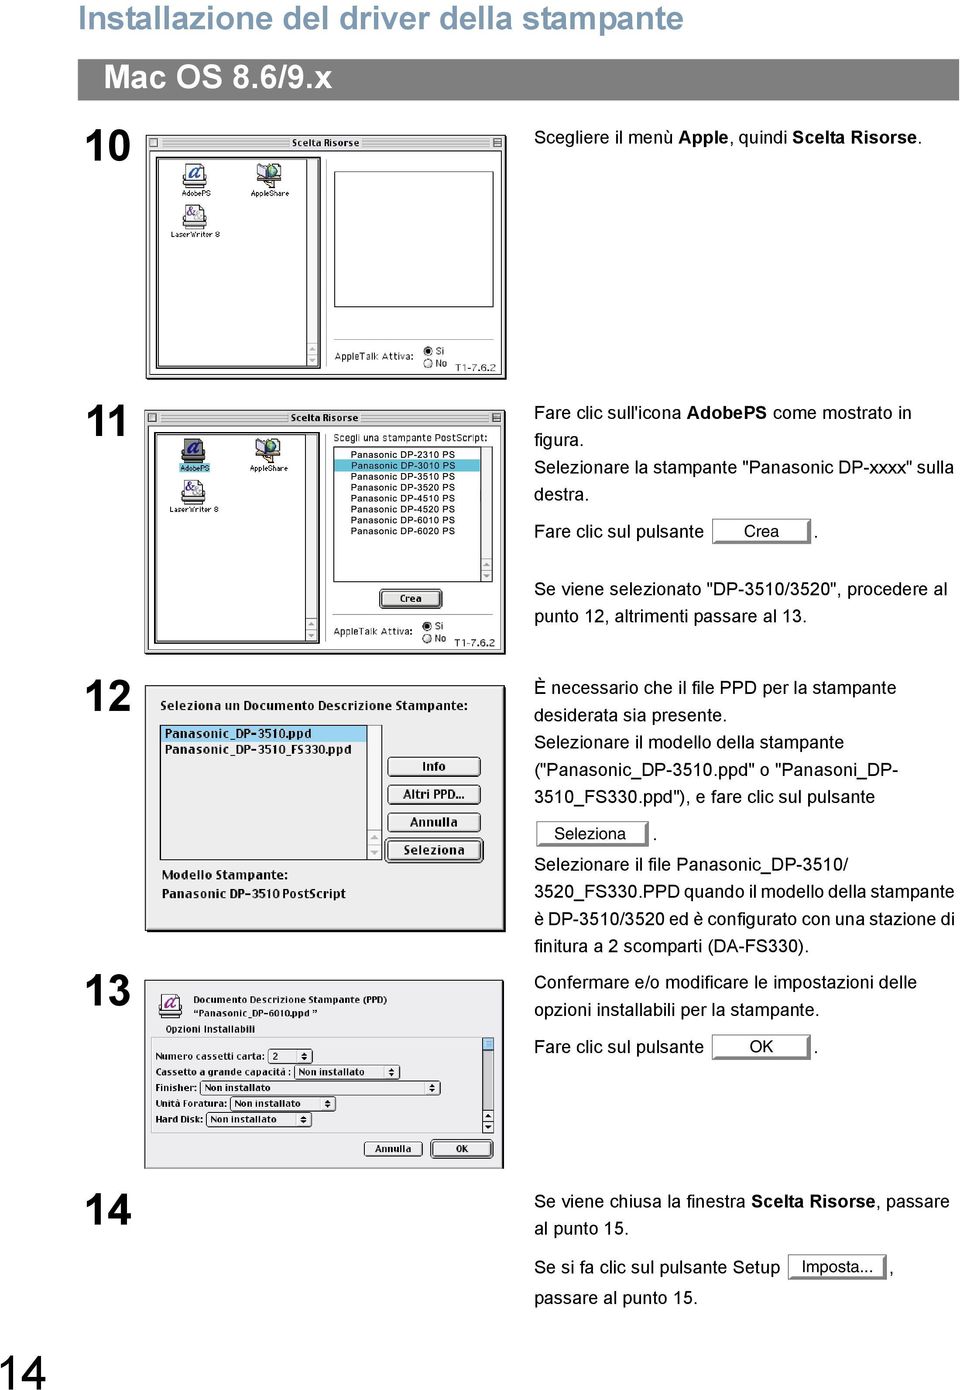 È necessario che il file PPD per la stampante 12 desiderata sia presente. Selezionare il modello della stampante ("Panasonic_DP-3510.ppd" o "Panasoni_DP- 3510_FS330.